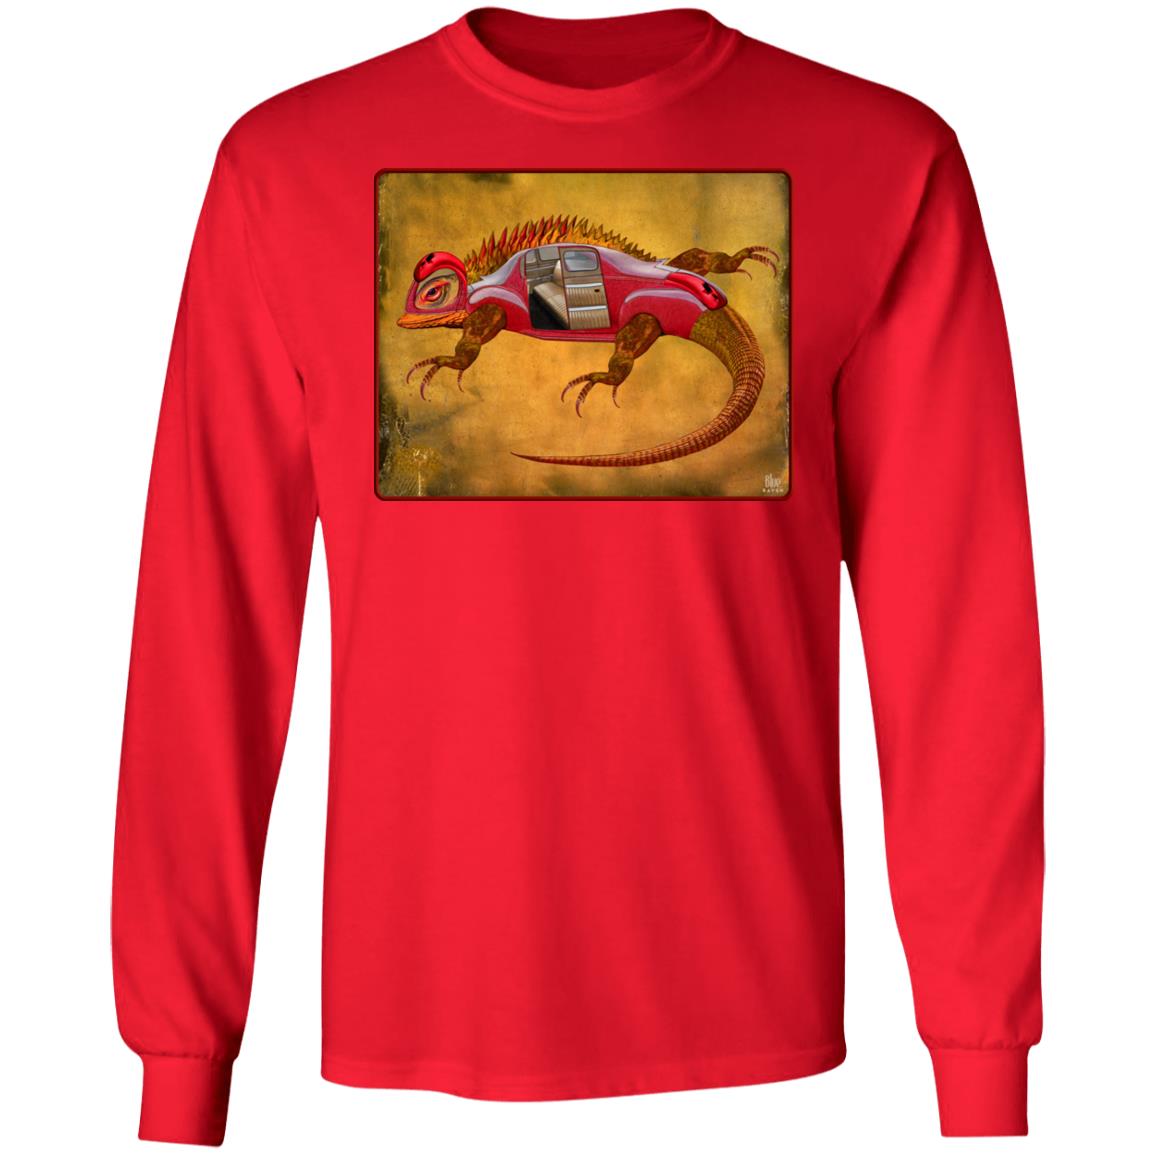 Uber Lizard - Red - Men's Long Sleeve T-Shirt